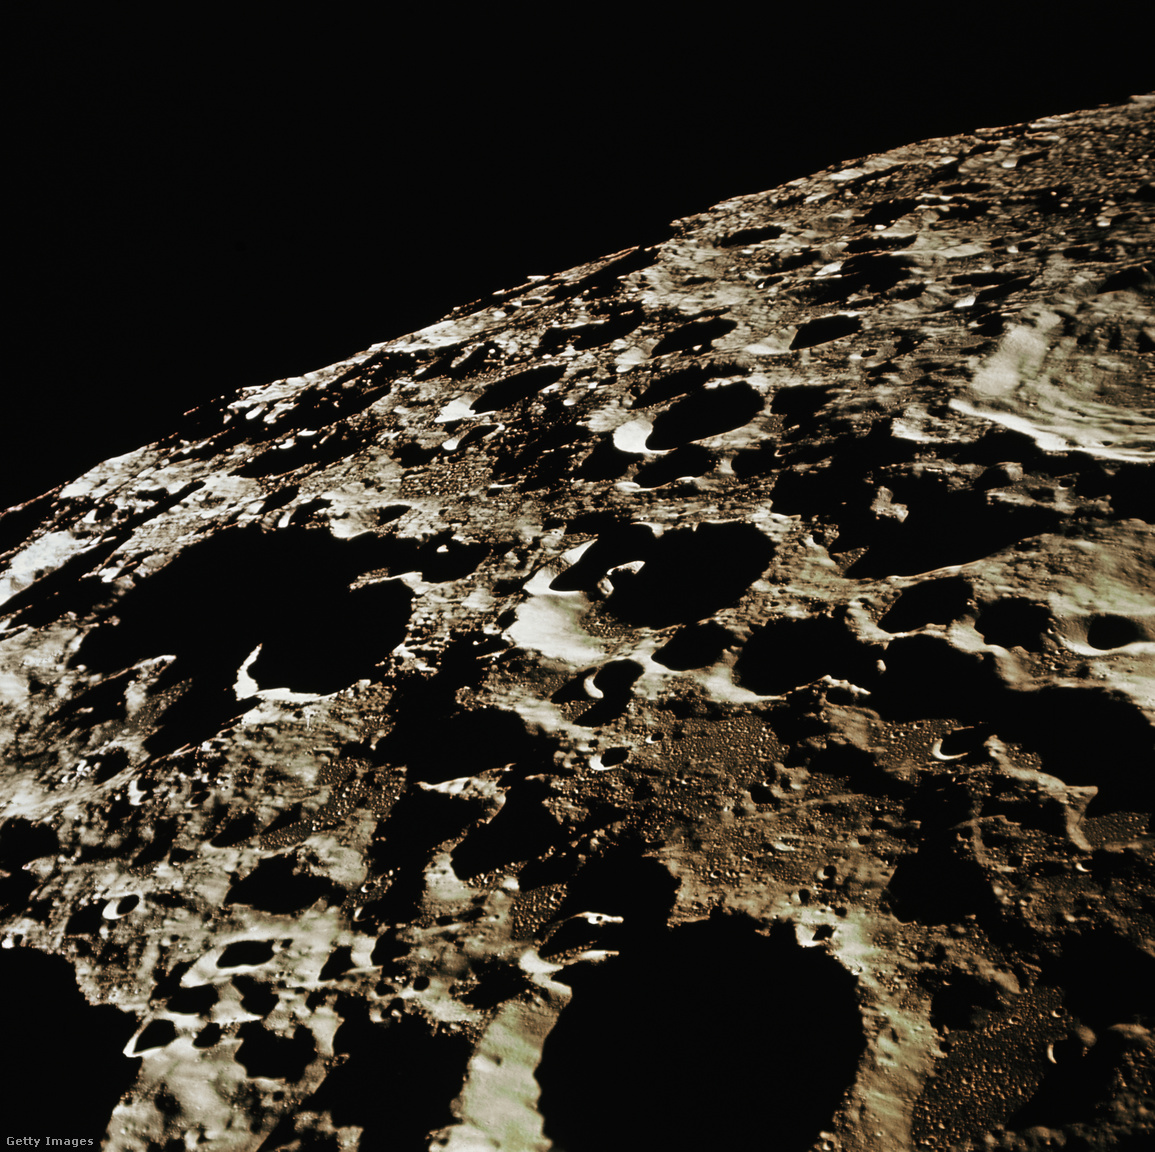 Az Apollo 11-ről készített kép a Hold távolabbi, délnyugati oldaláról. A Nemzetközi Csillagászati Unió 308-as krátere, körülbelül 58 mérföld átmérőjű, a kép szélén található nagy kráter. A fénykép közepén egy kis csúcskráter (kevesebb, mint 1 mérföld átmérőjű) egy közeli kúp alakú dombon helyezkedik el, amely két szomszédos, nagyobb kráter (körülbelül 20 és 9 mérföld átmérőjűek) közös peremén található. Ez a domb nem különbözik a Földön található salakkúpoktól, és egykori Holdvulkanizmus jelenlétére utal
                        